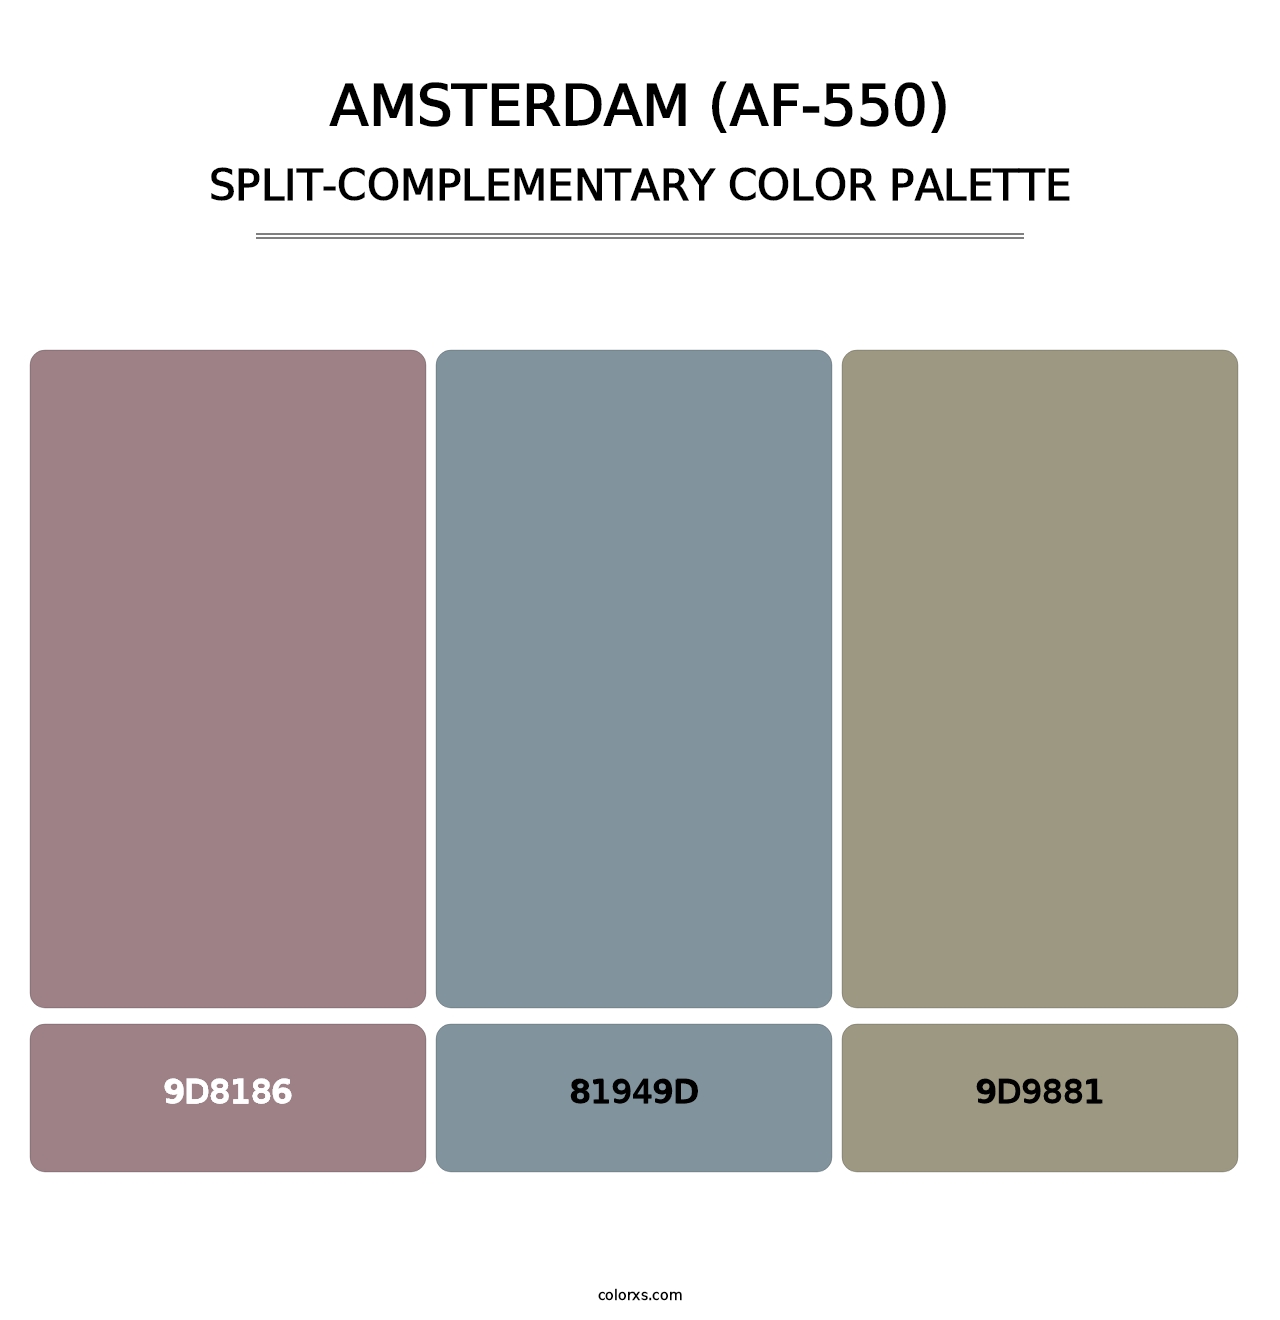 Amsterdam (AF-550) - Split-Complementary Color Palette